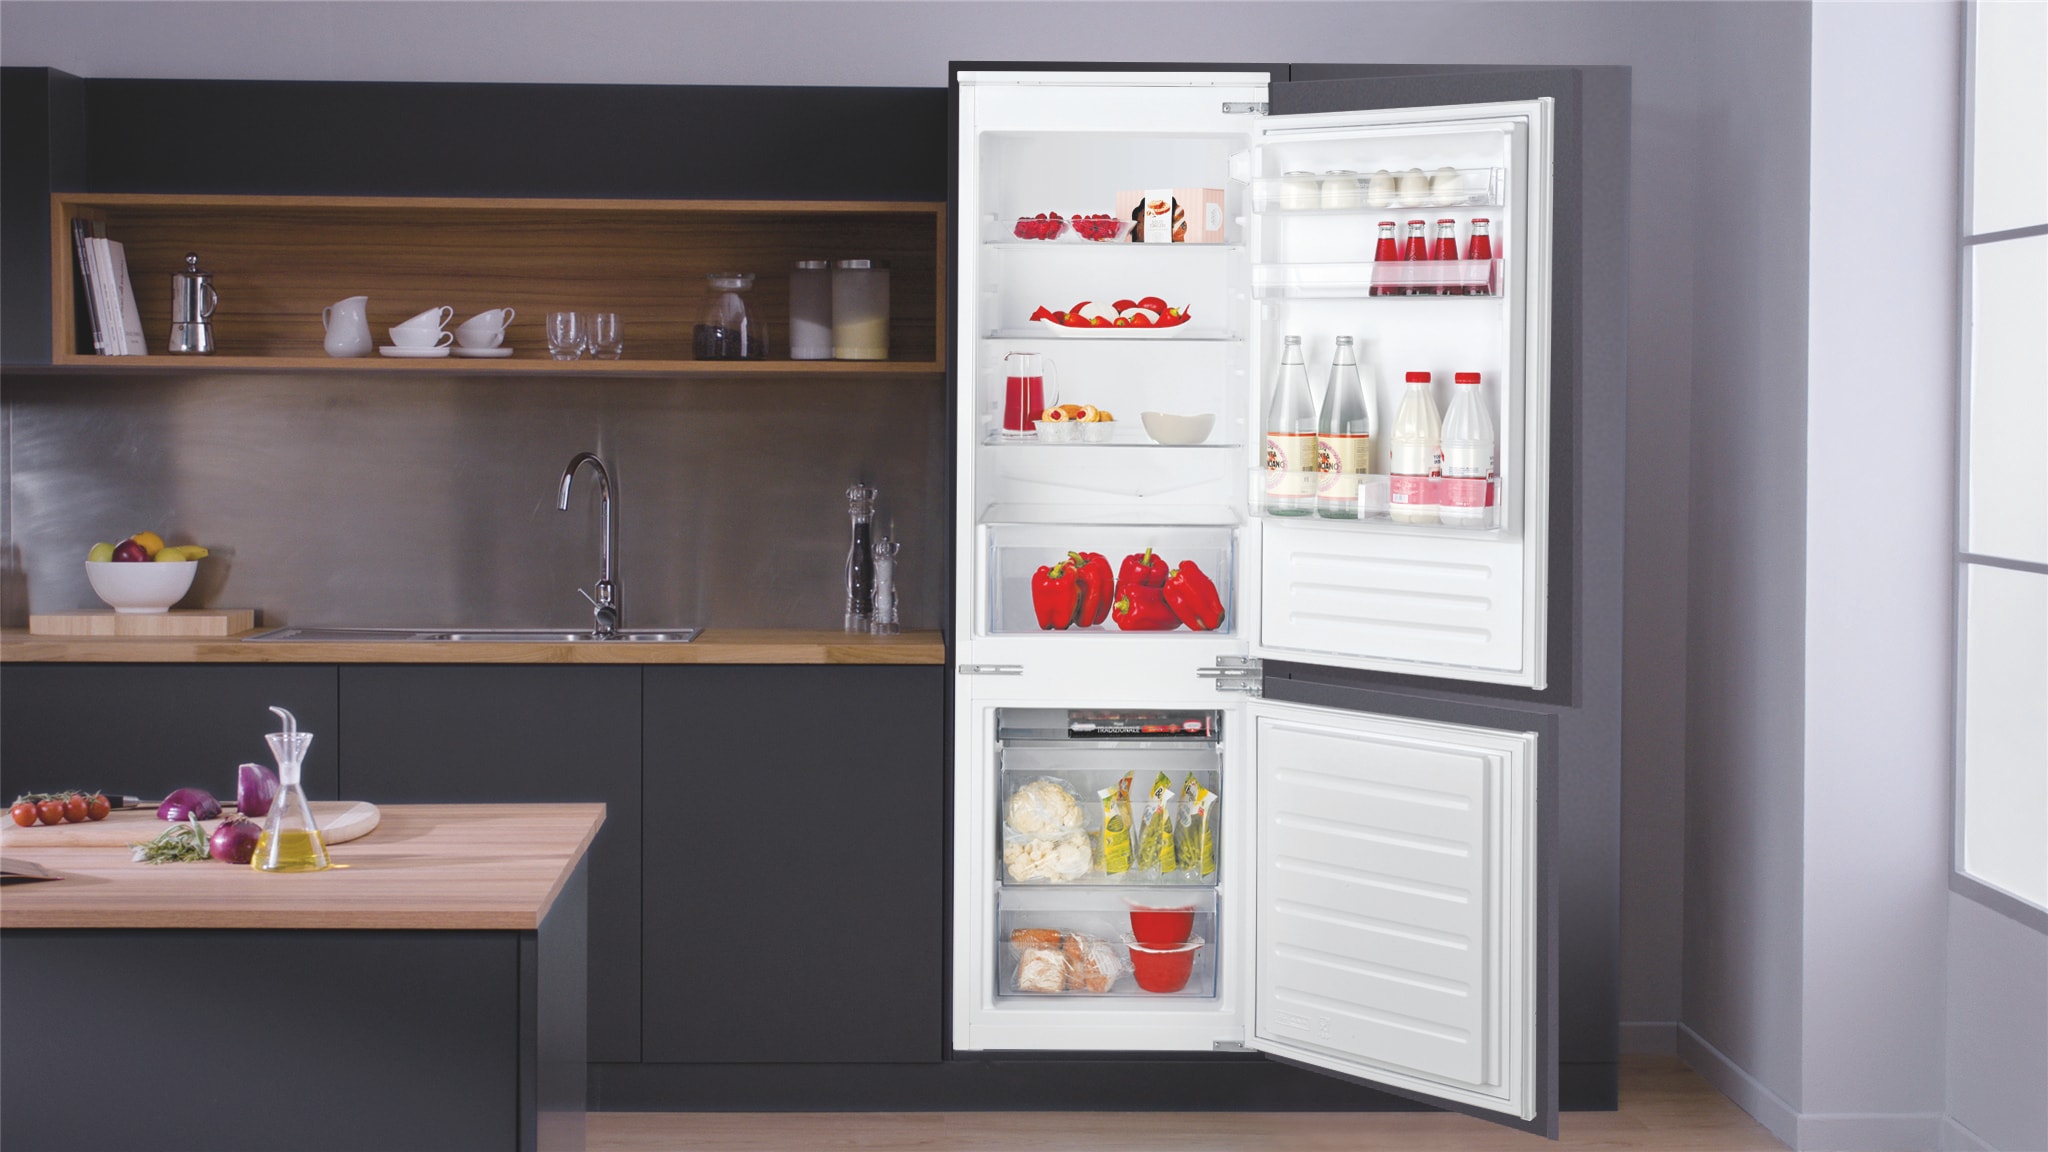 Réfrigérateur congélateur encastrable 273L - ART66122 - Whirlpool